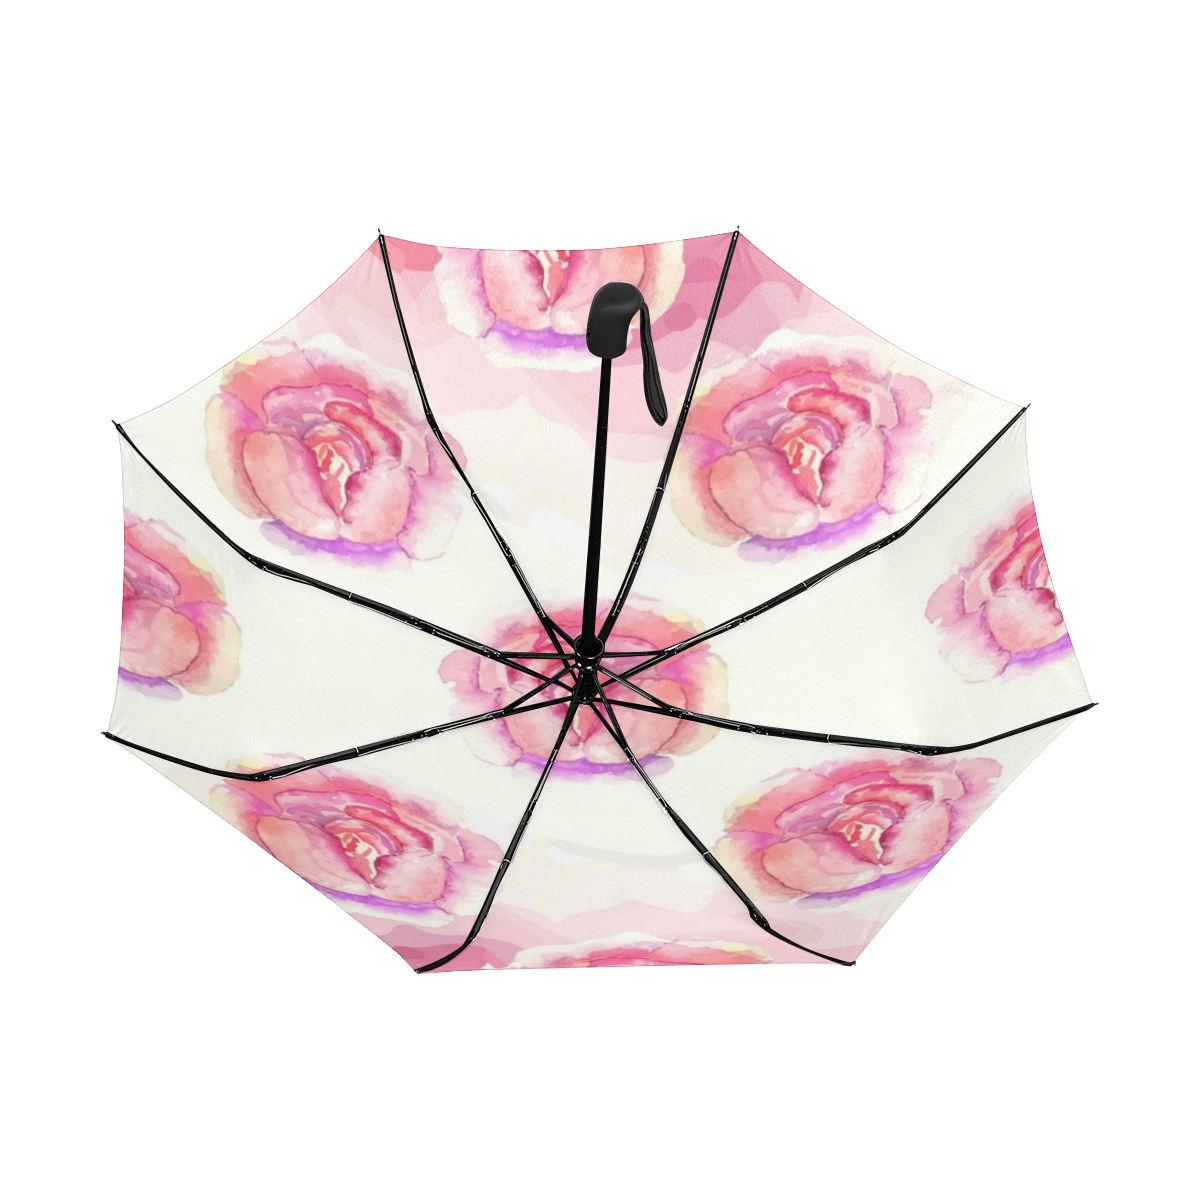 Pink Flowers Anti-UV Auto-Foldable Umbrella (Underside Printing) (U06)